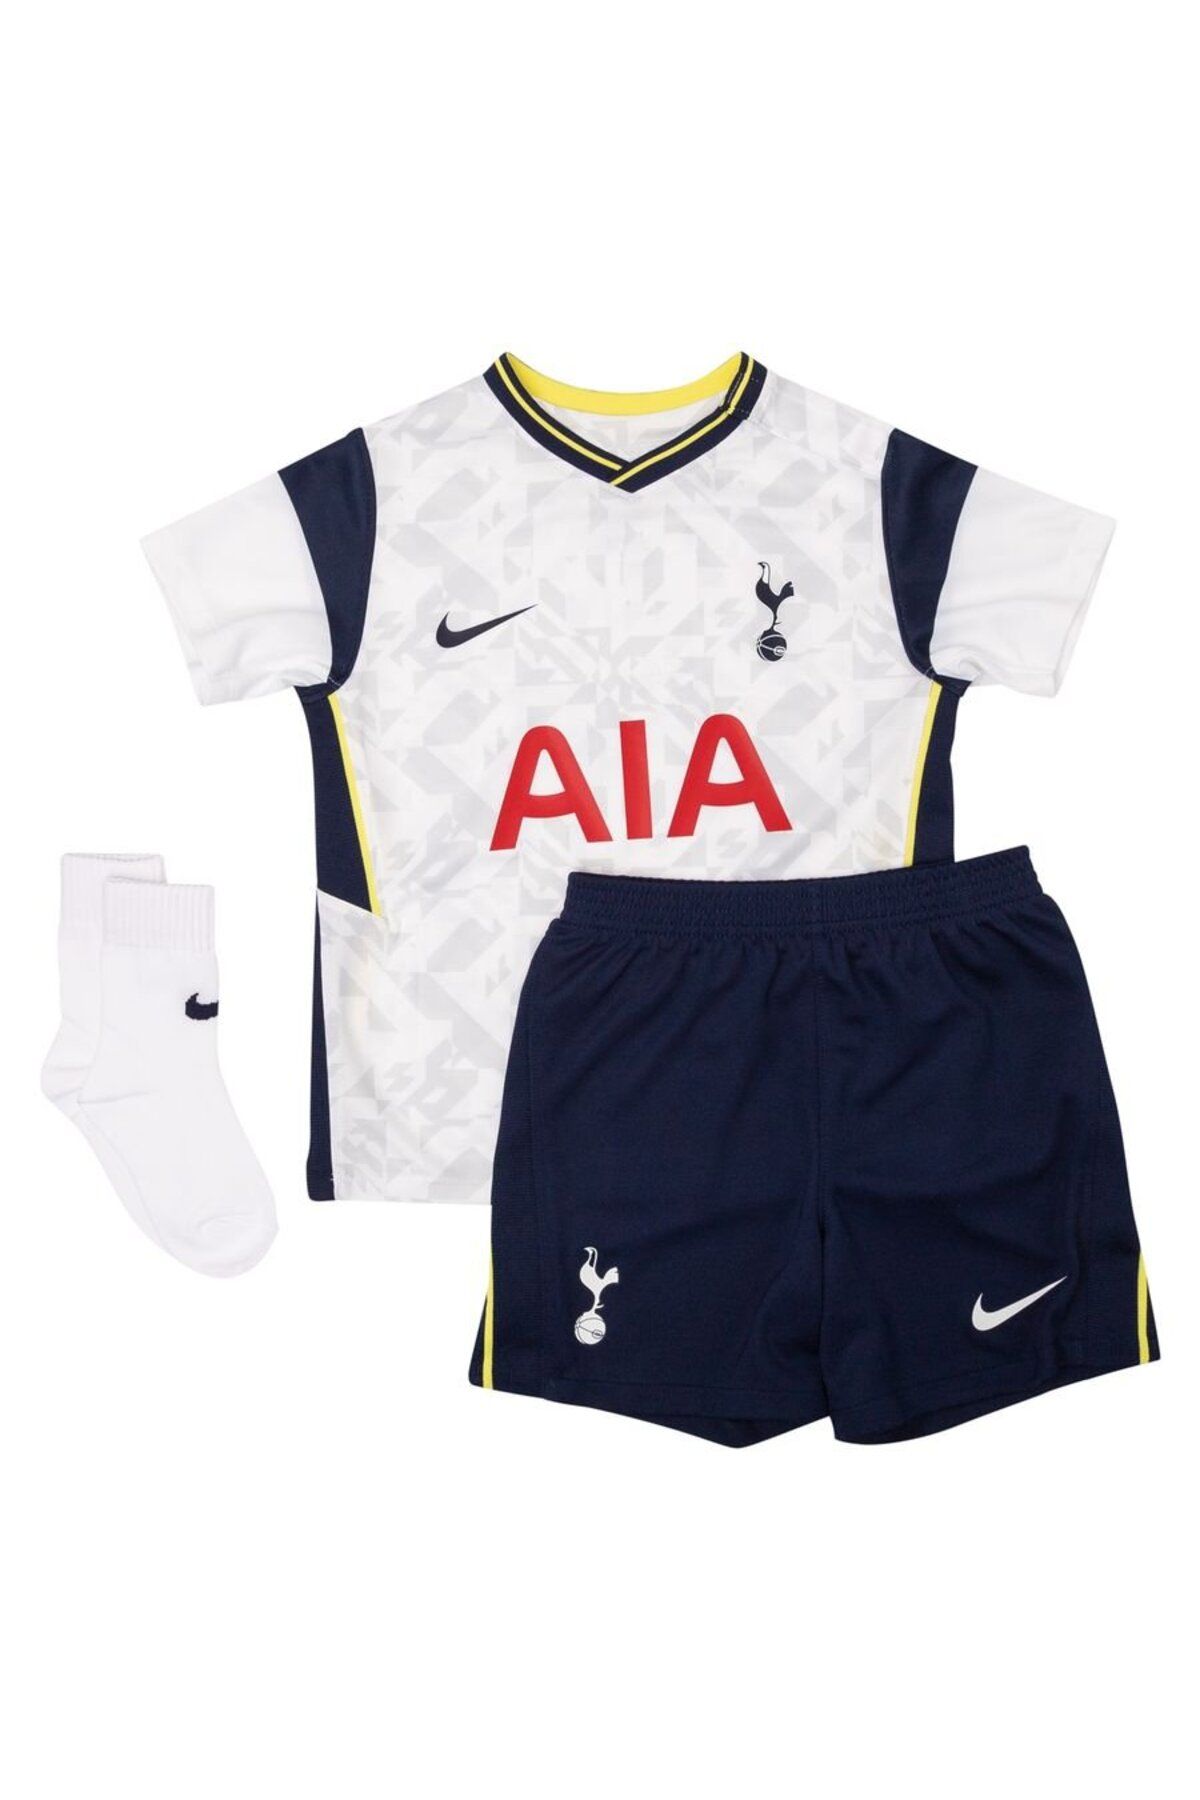 Nike Tottenham İç Saha Forması 2020/21 Bebek Takımı Çocuk